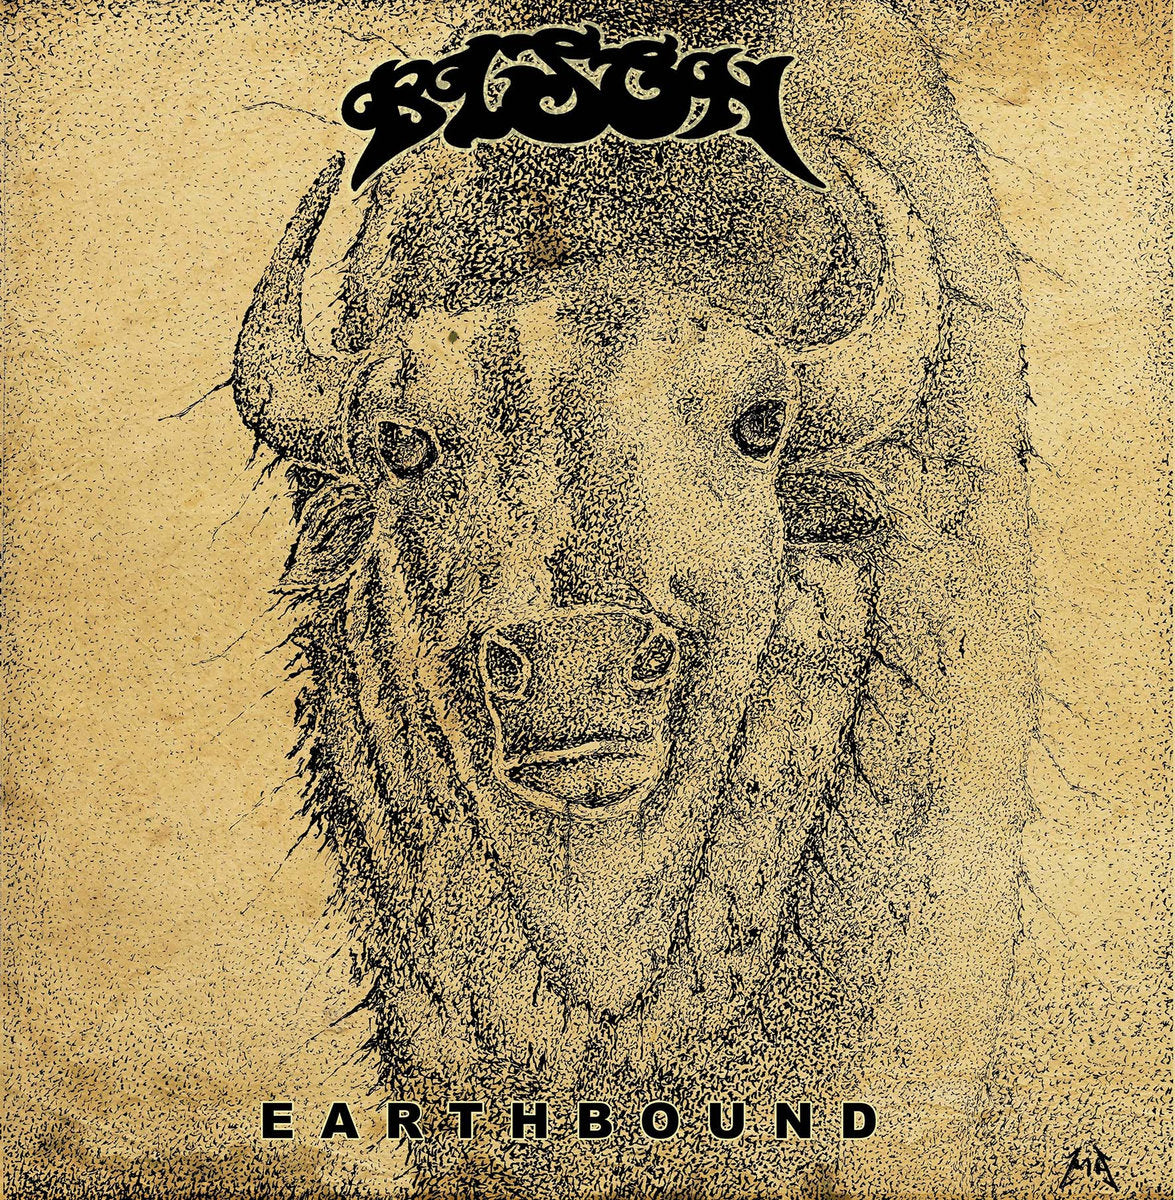 Bison "Earth Bound" Vinyl LP